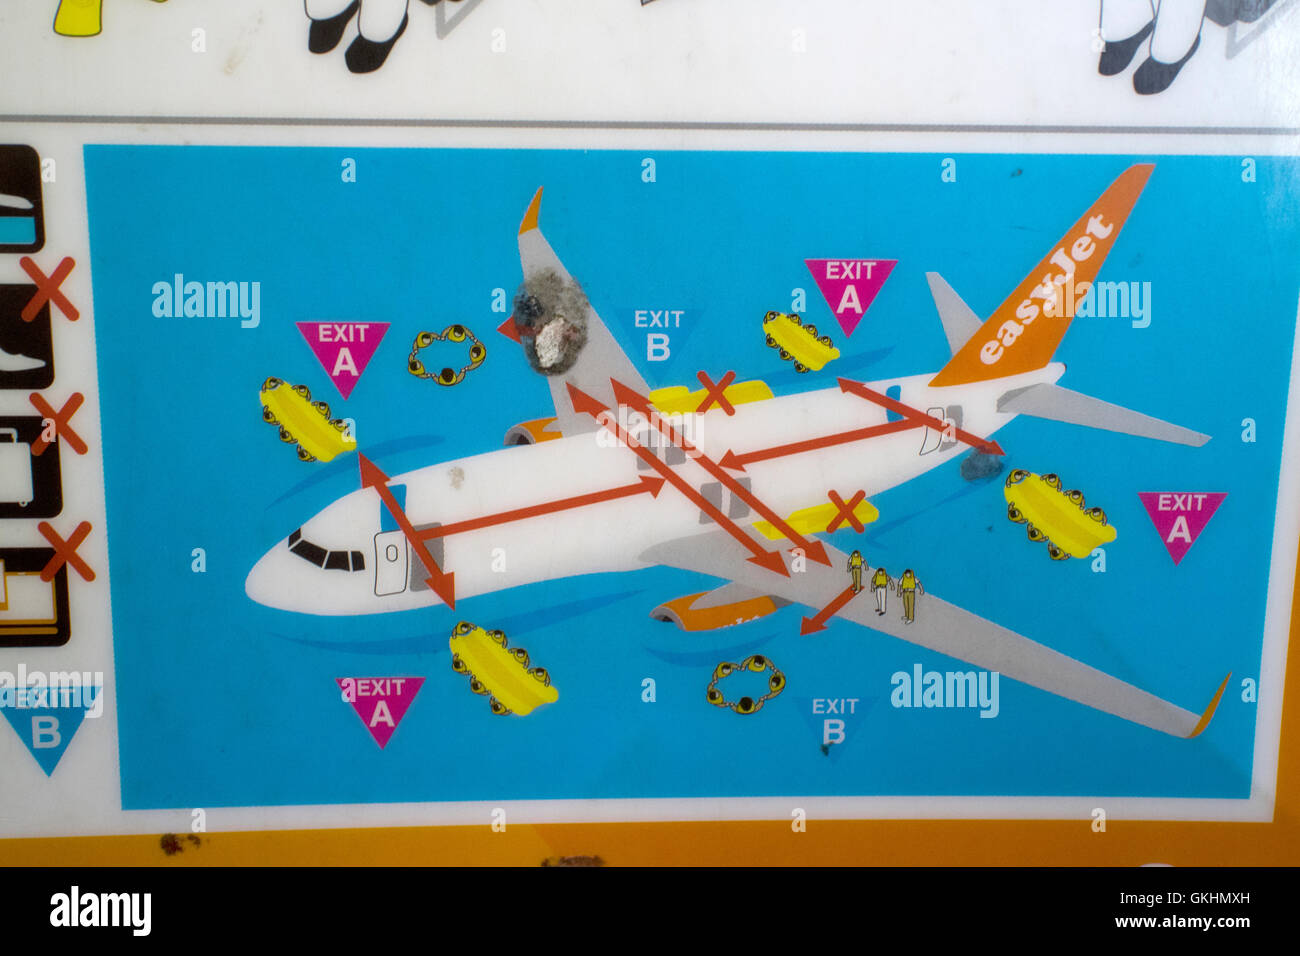 Aeromobili easyjet air passenger opuscolo sulla sicurezza carta che mostra le diapositive esterna e lo sbarco su acqua Foto Stock